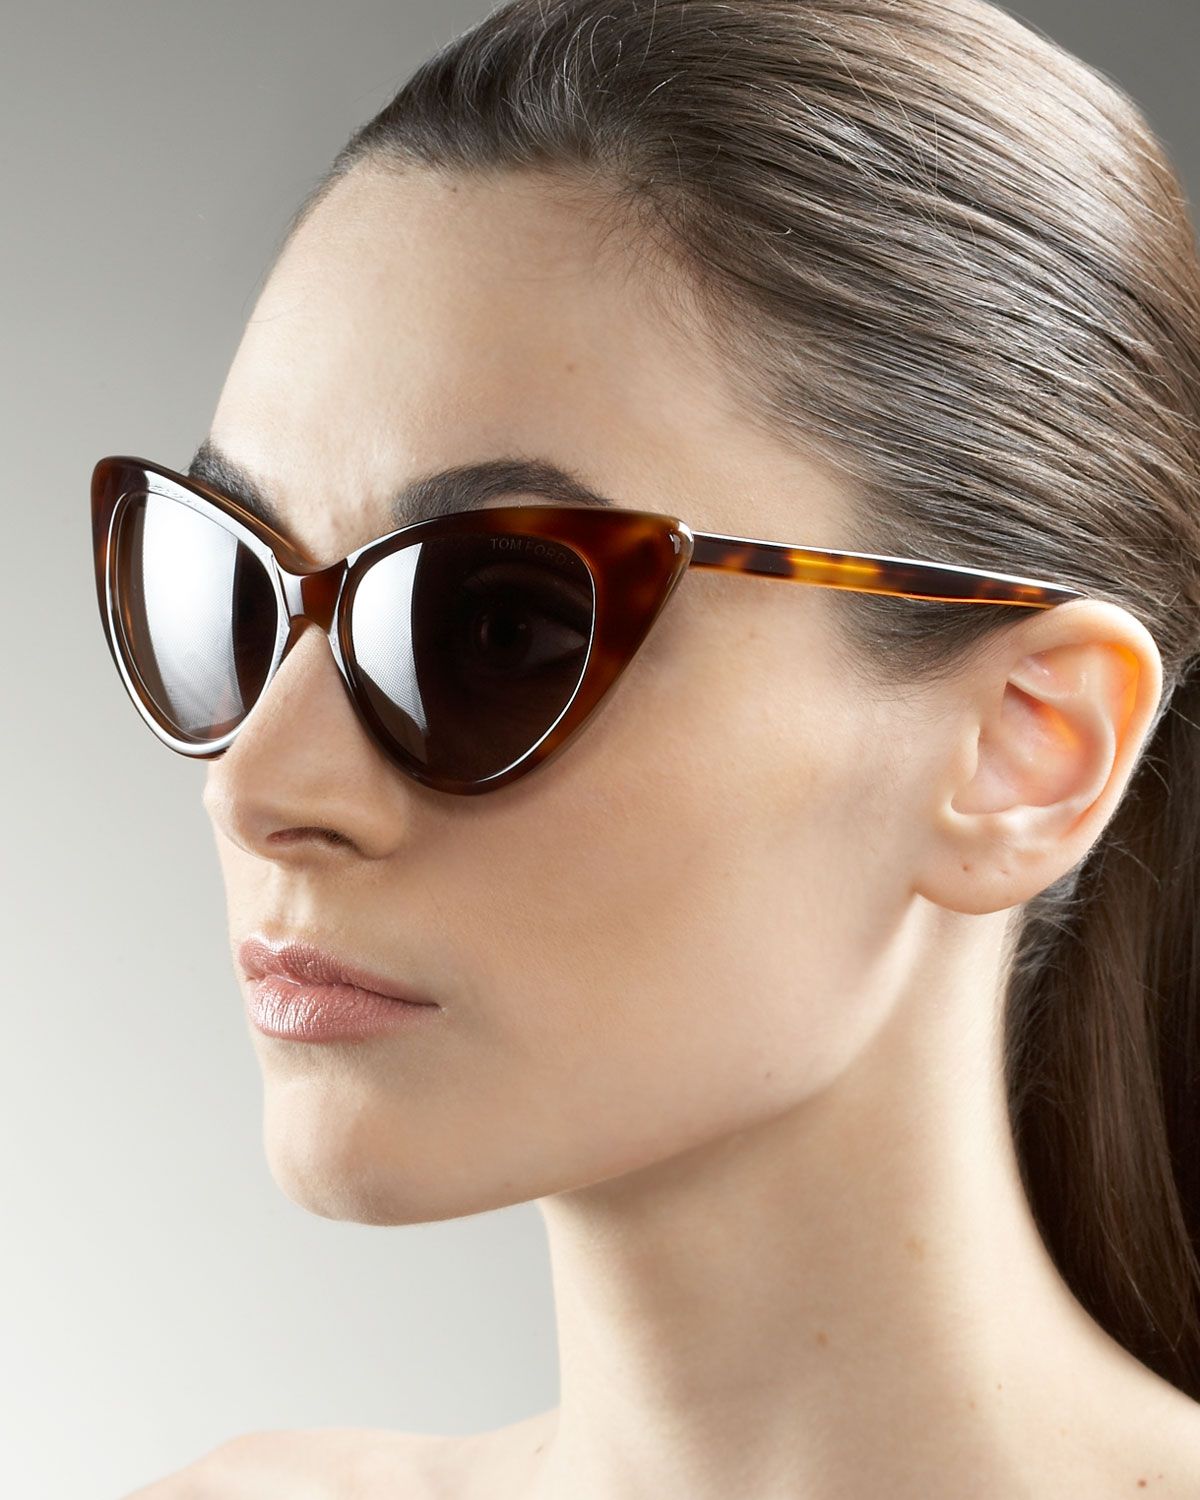 Трендовые солнцезащитные очки с фото - обзор новинок сезона